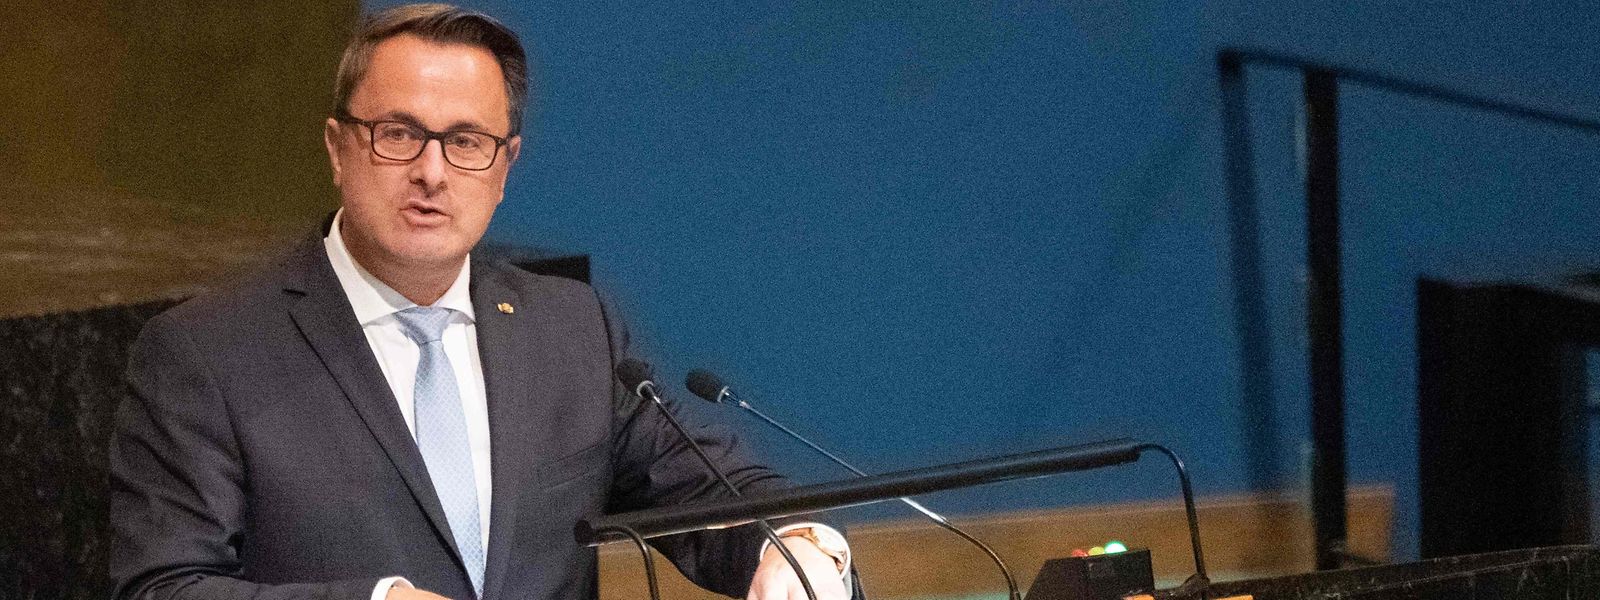 O primeiro-ministro luxemburguês, Xavier Bettel, no discurso na Assembleia Geral da ONU a 23 de setembro. 